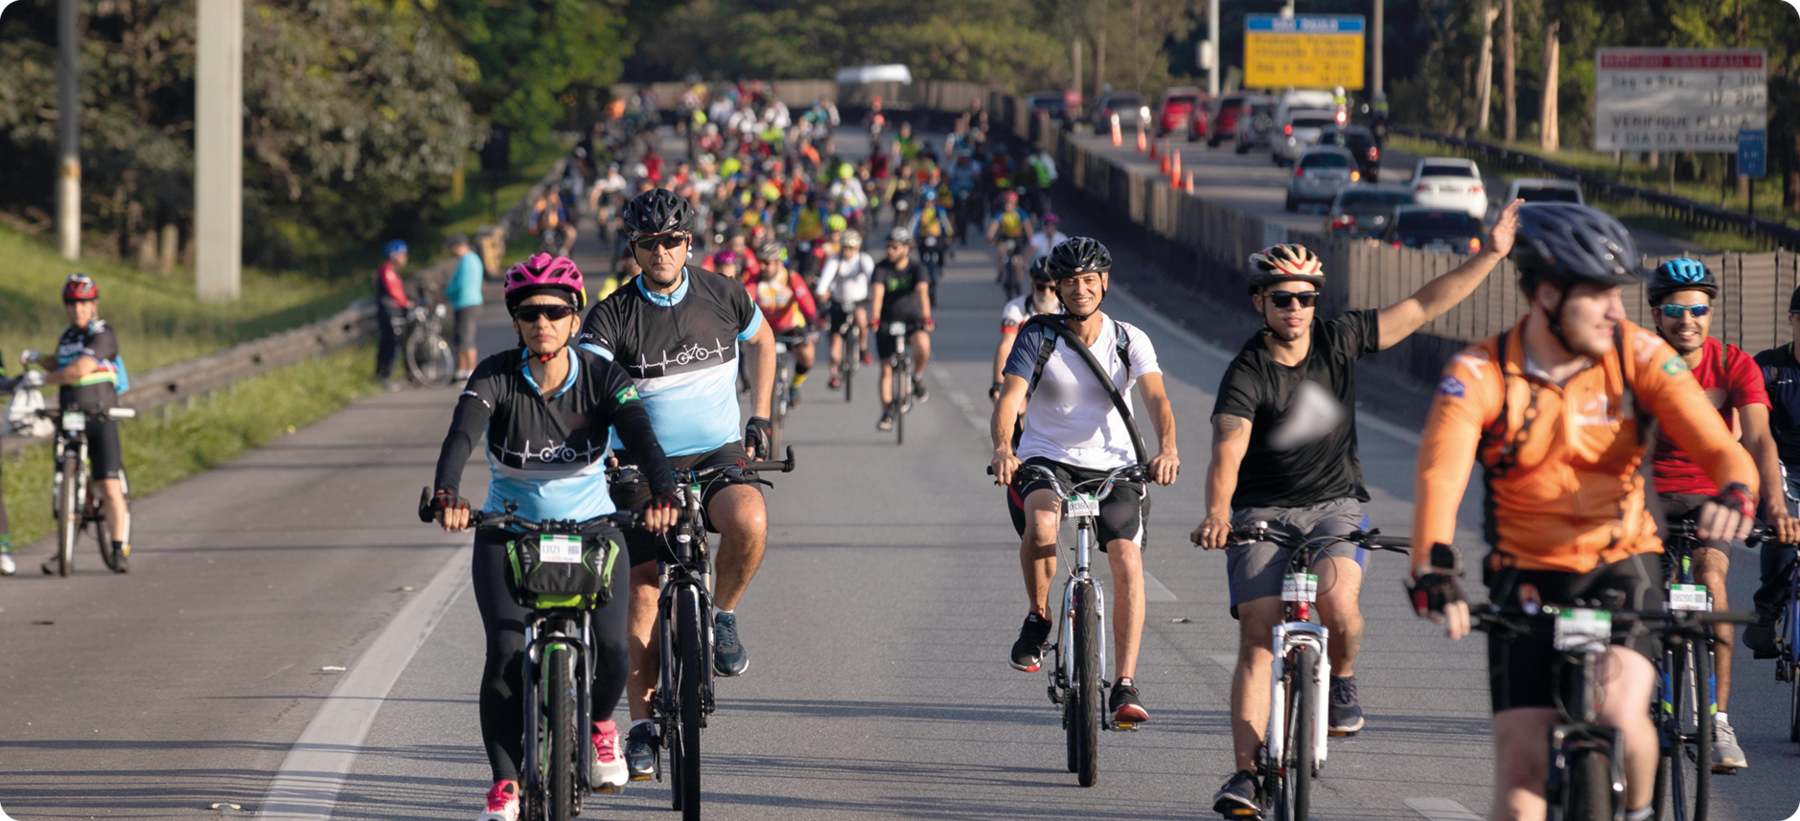 Fotografia. Diversas pessoas usando capacete e roupas coloridas andando de bicicleta em uma rua.